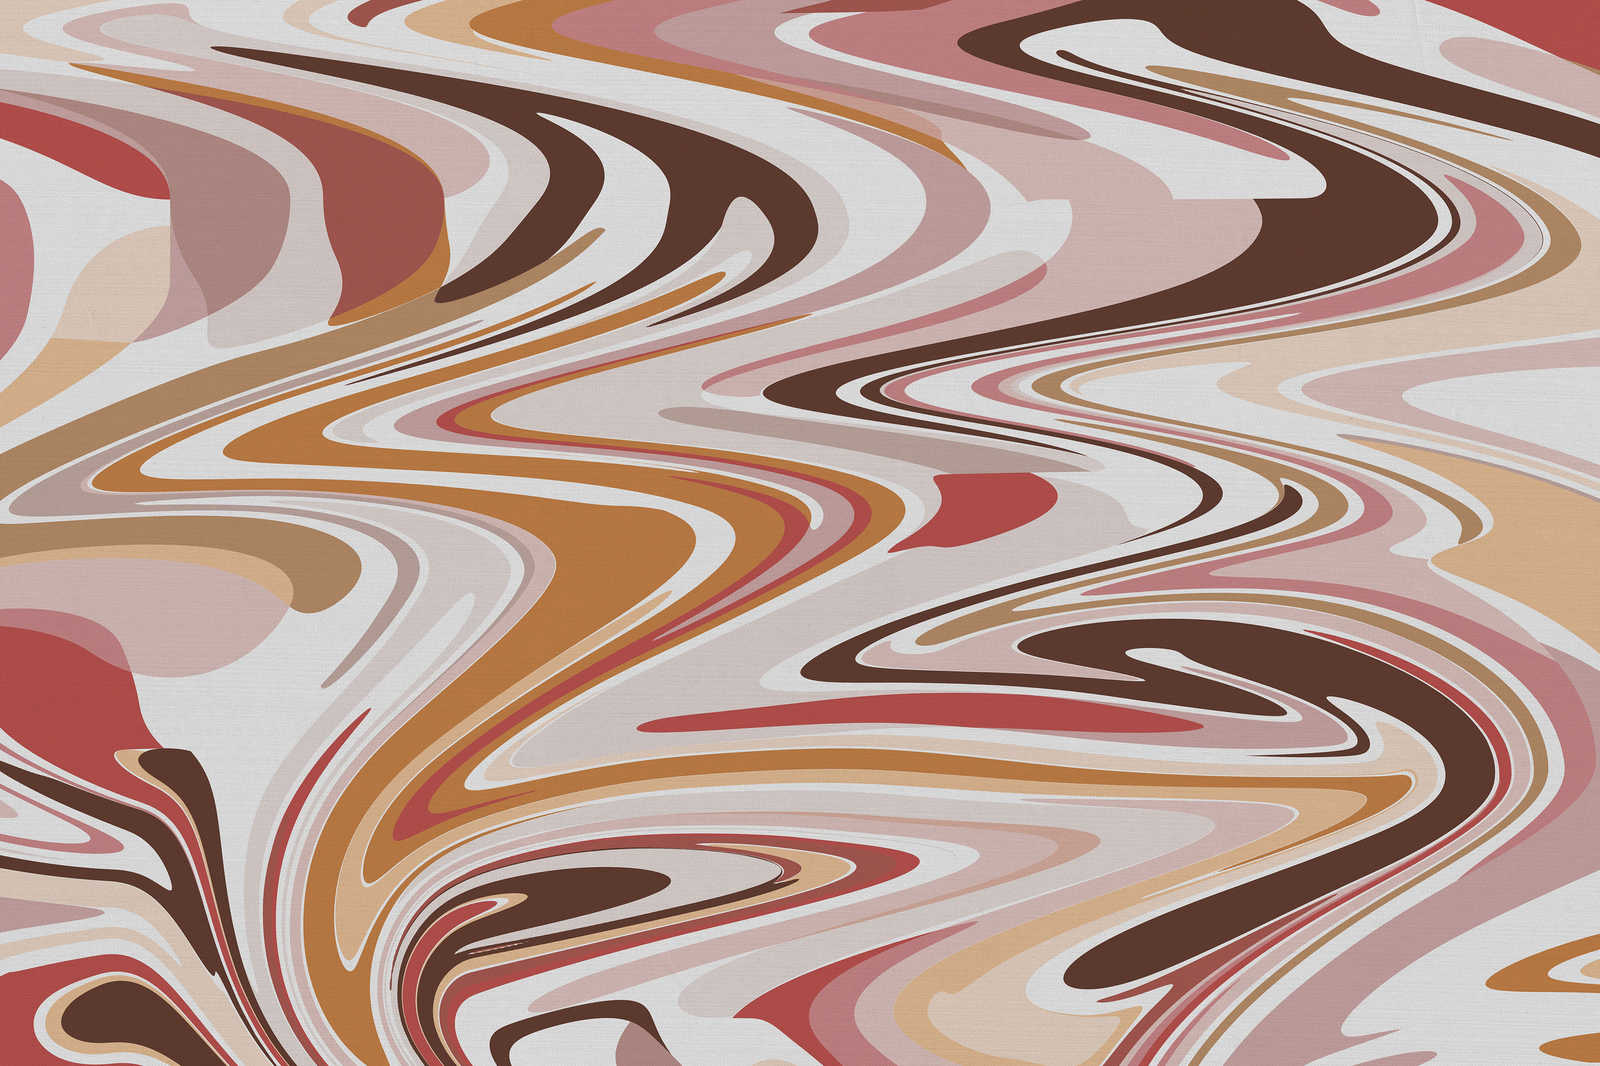             Lienzo con motivo abstracto en tonos cálidos - 0,90 m x 0,60 m
        